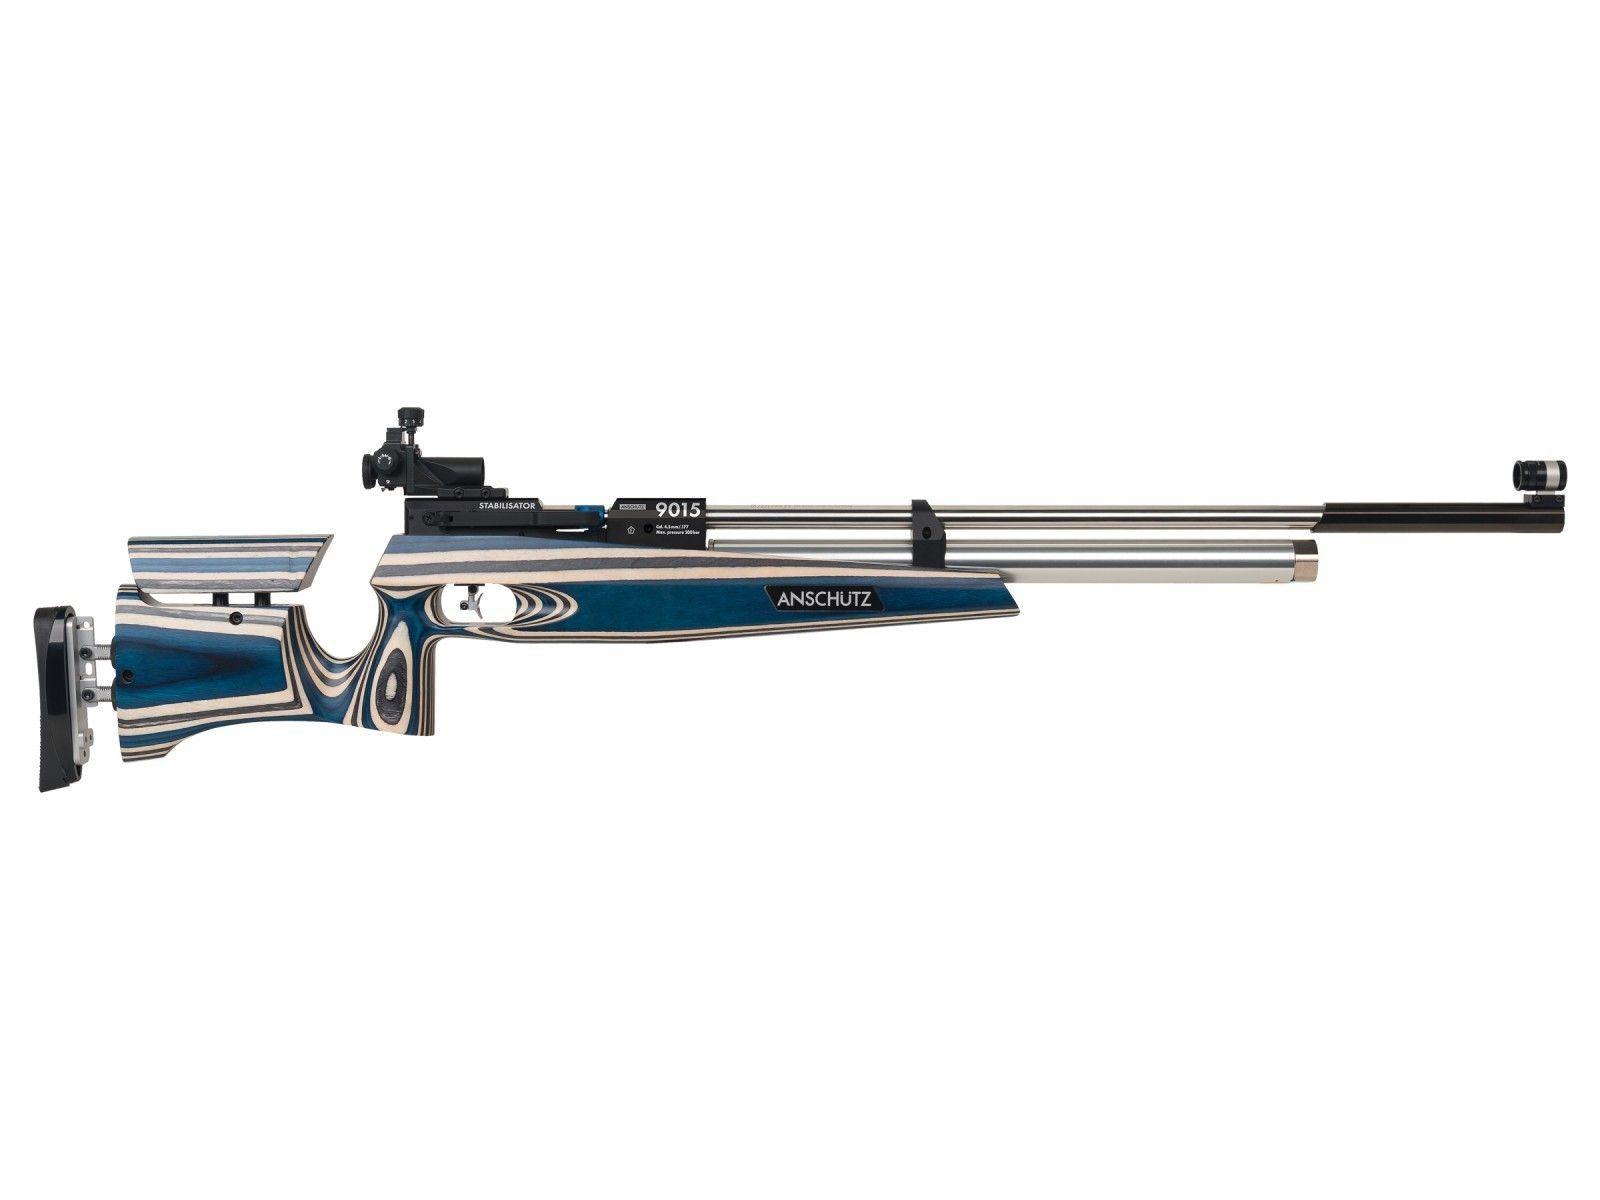 Anschutz Gun Logo - Anschutz 9015 Club Air Rifle, Laminated Wood W/4709A. Air rifles